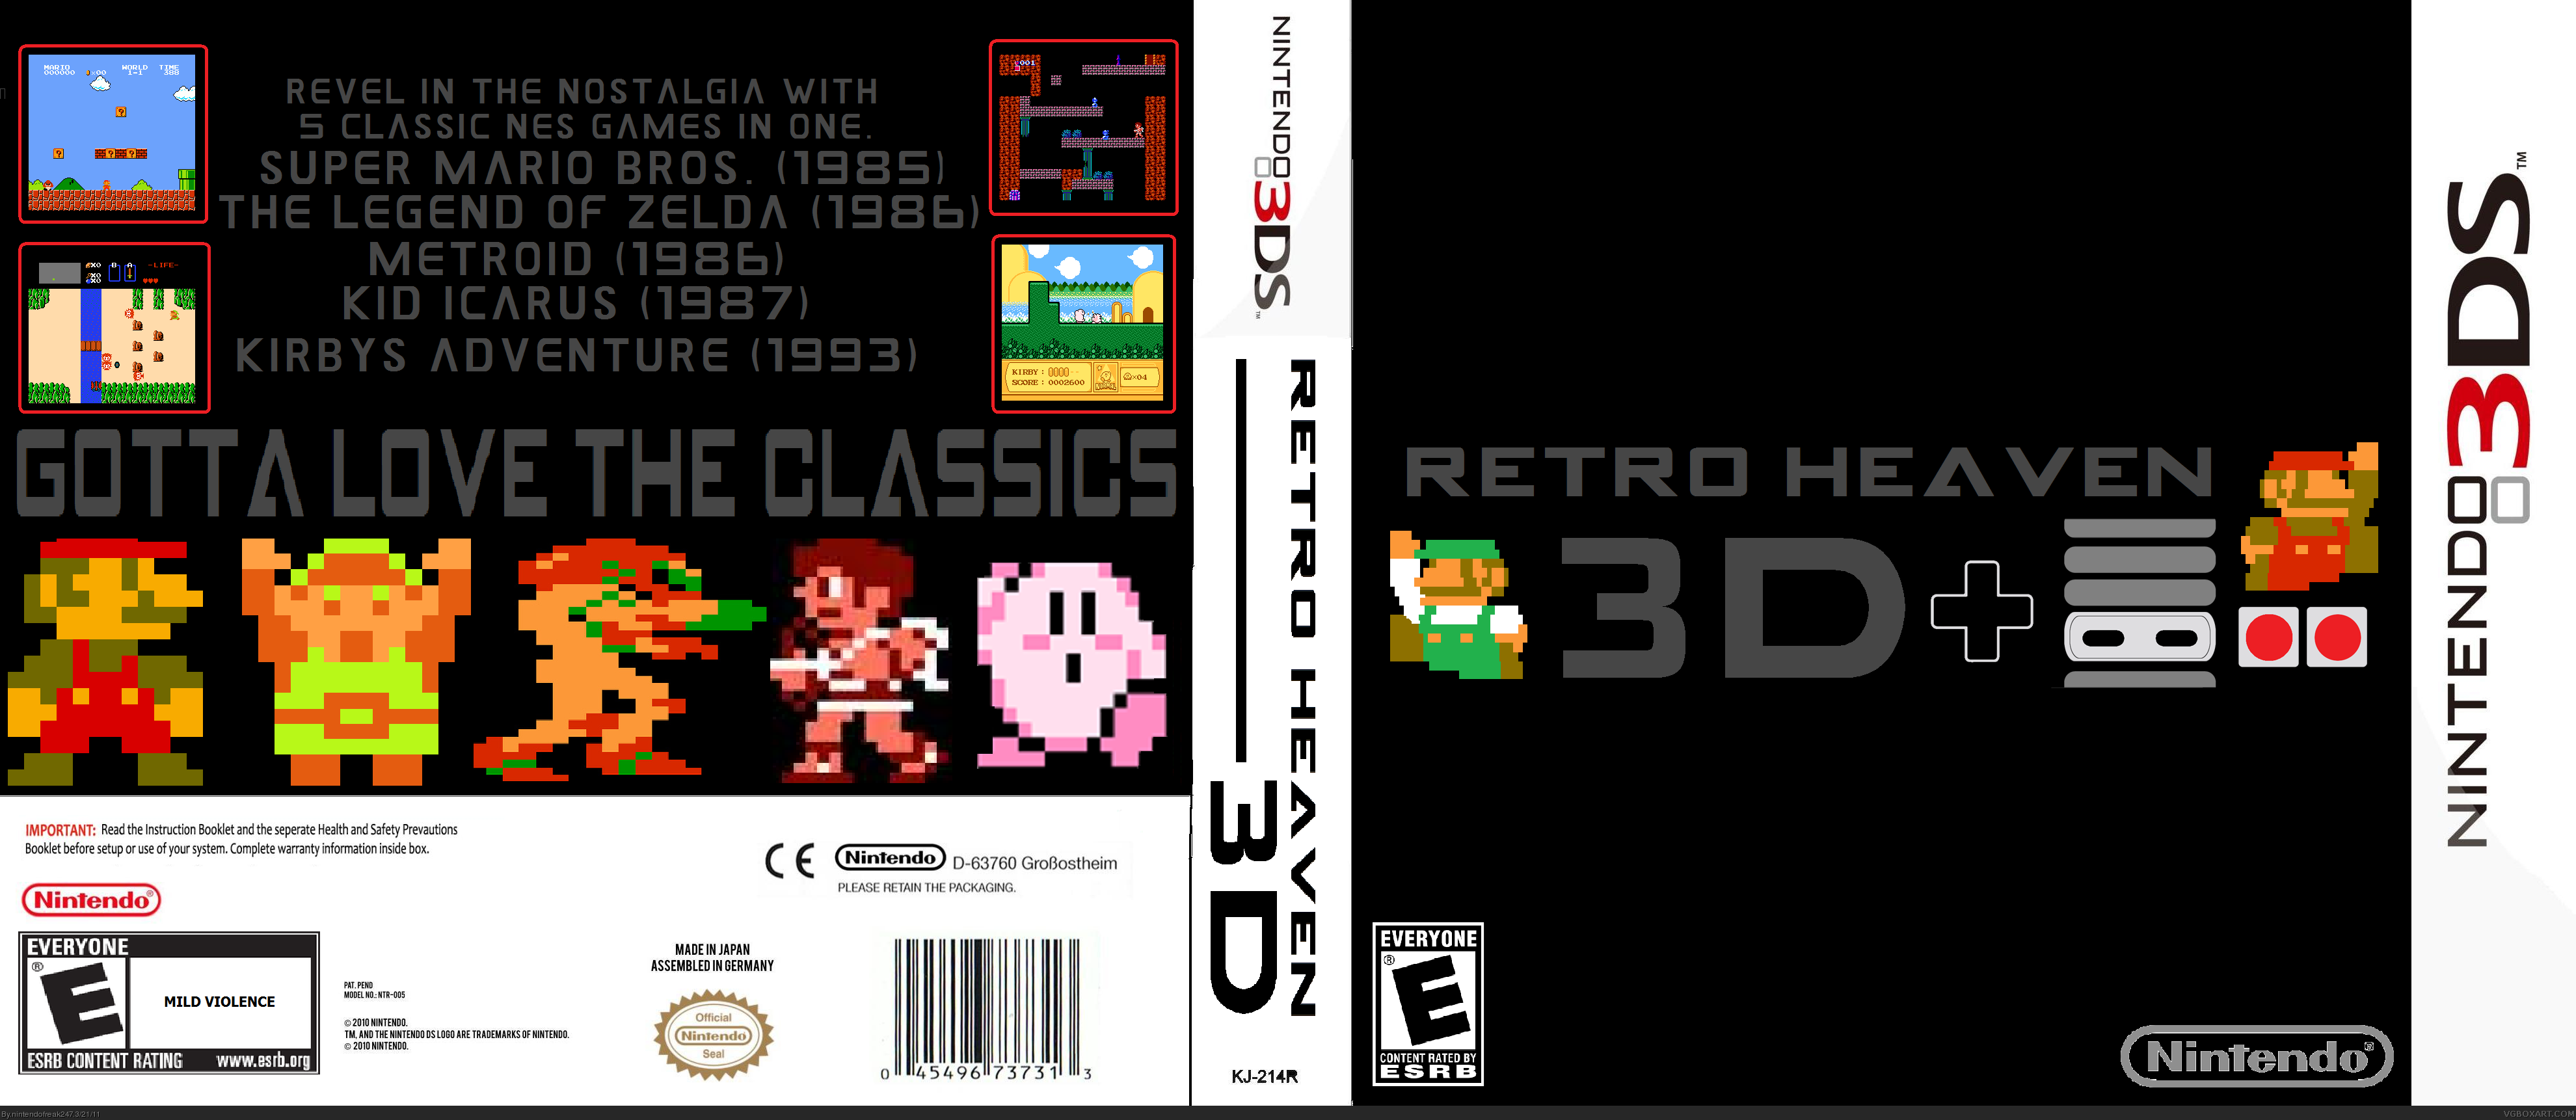 Retro Heaven 3D box cover